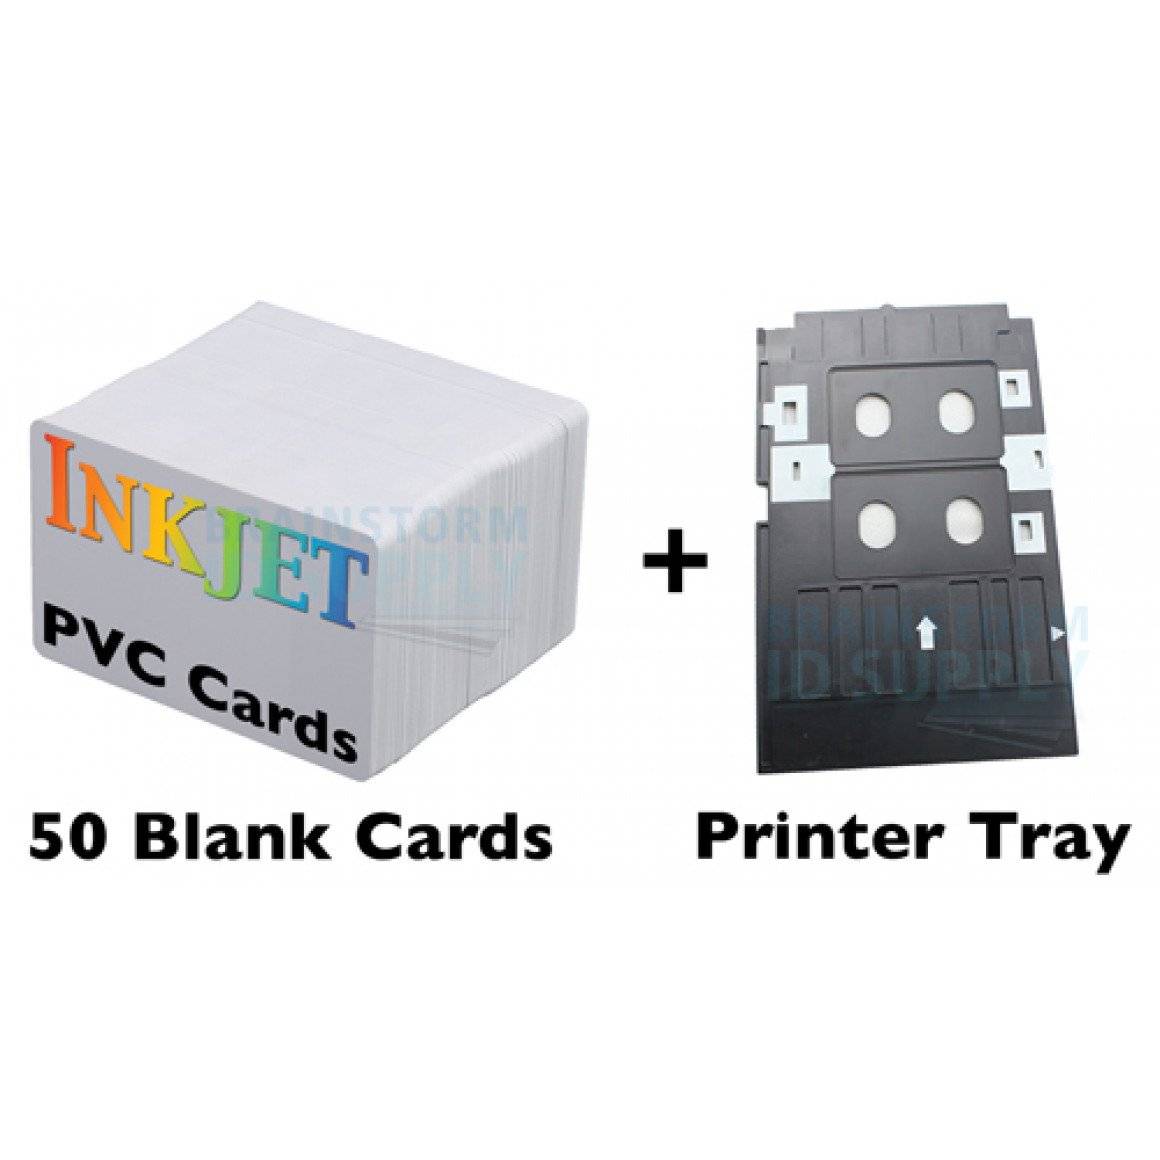 50 Card Inkjet PVC ID Kit